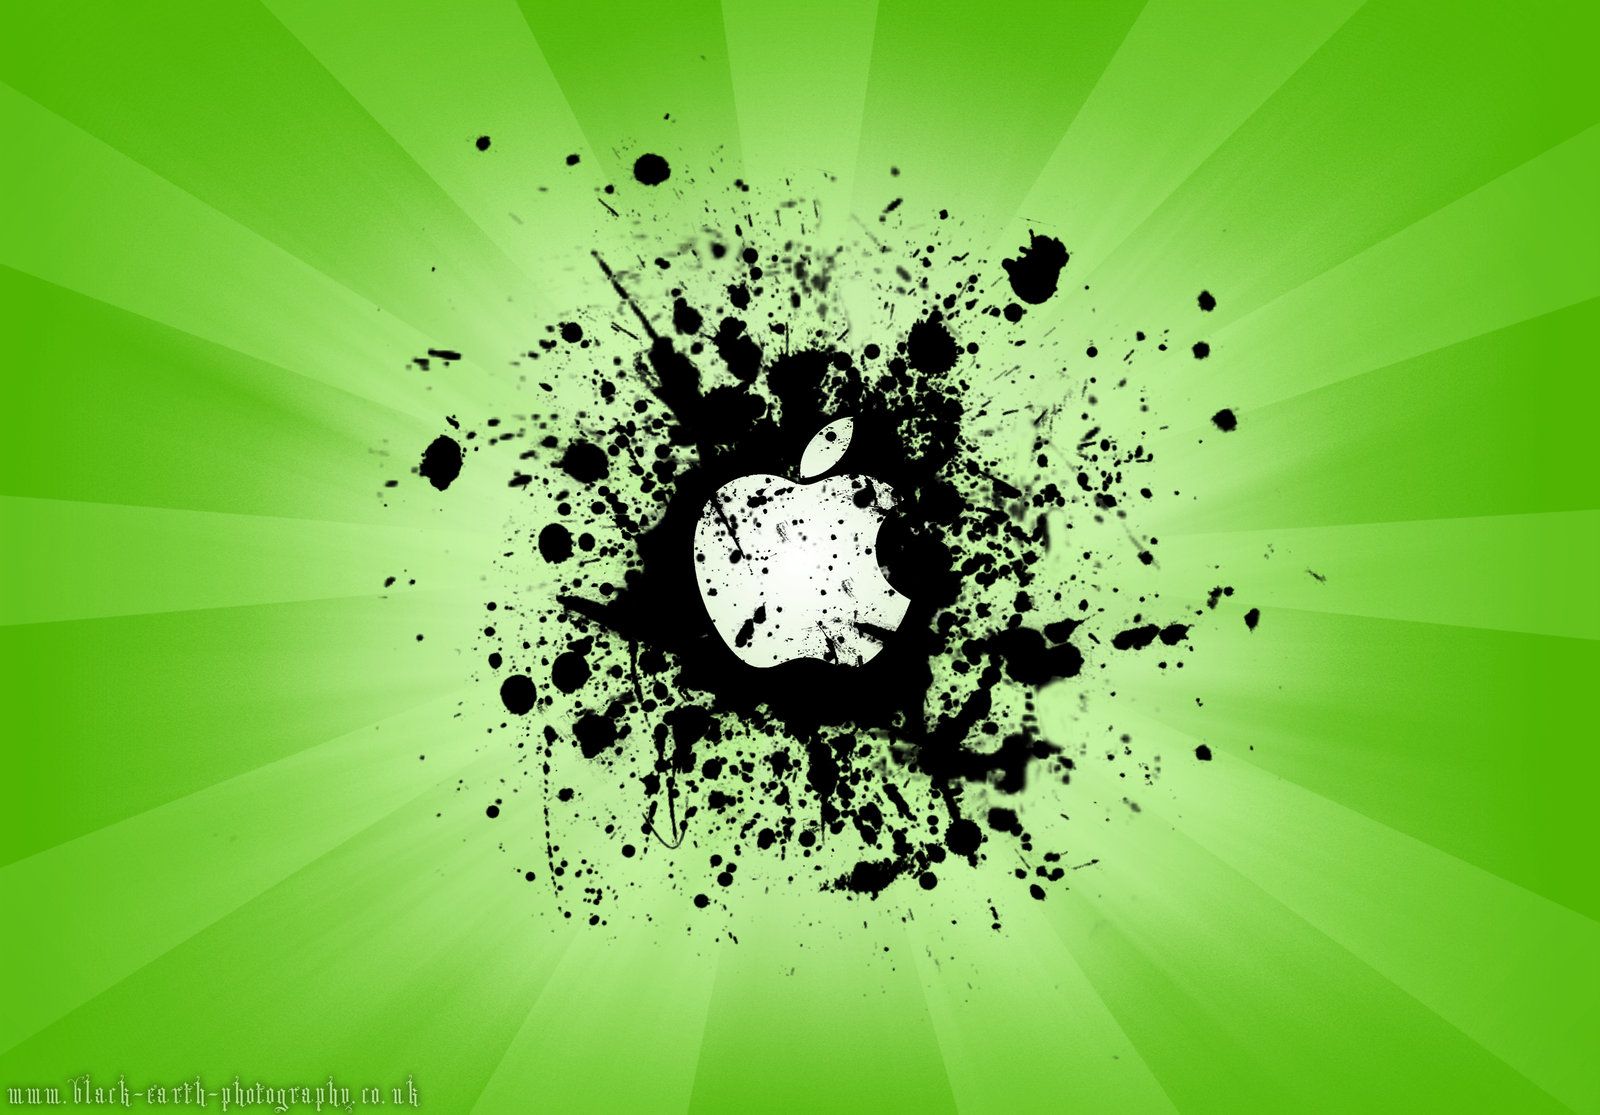 A Green Apple Splat Wallpaper by black-earth-art on DeviantArt